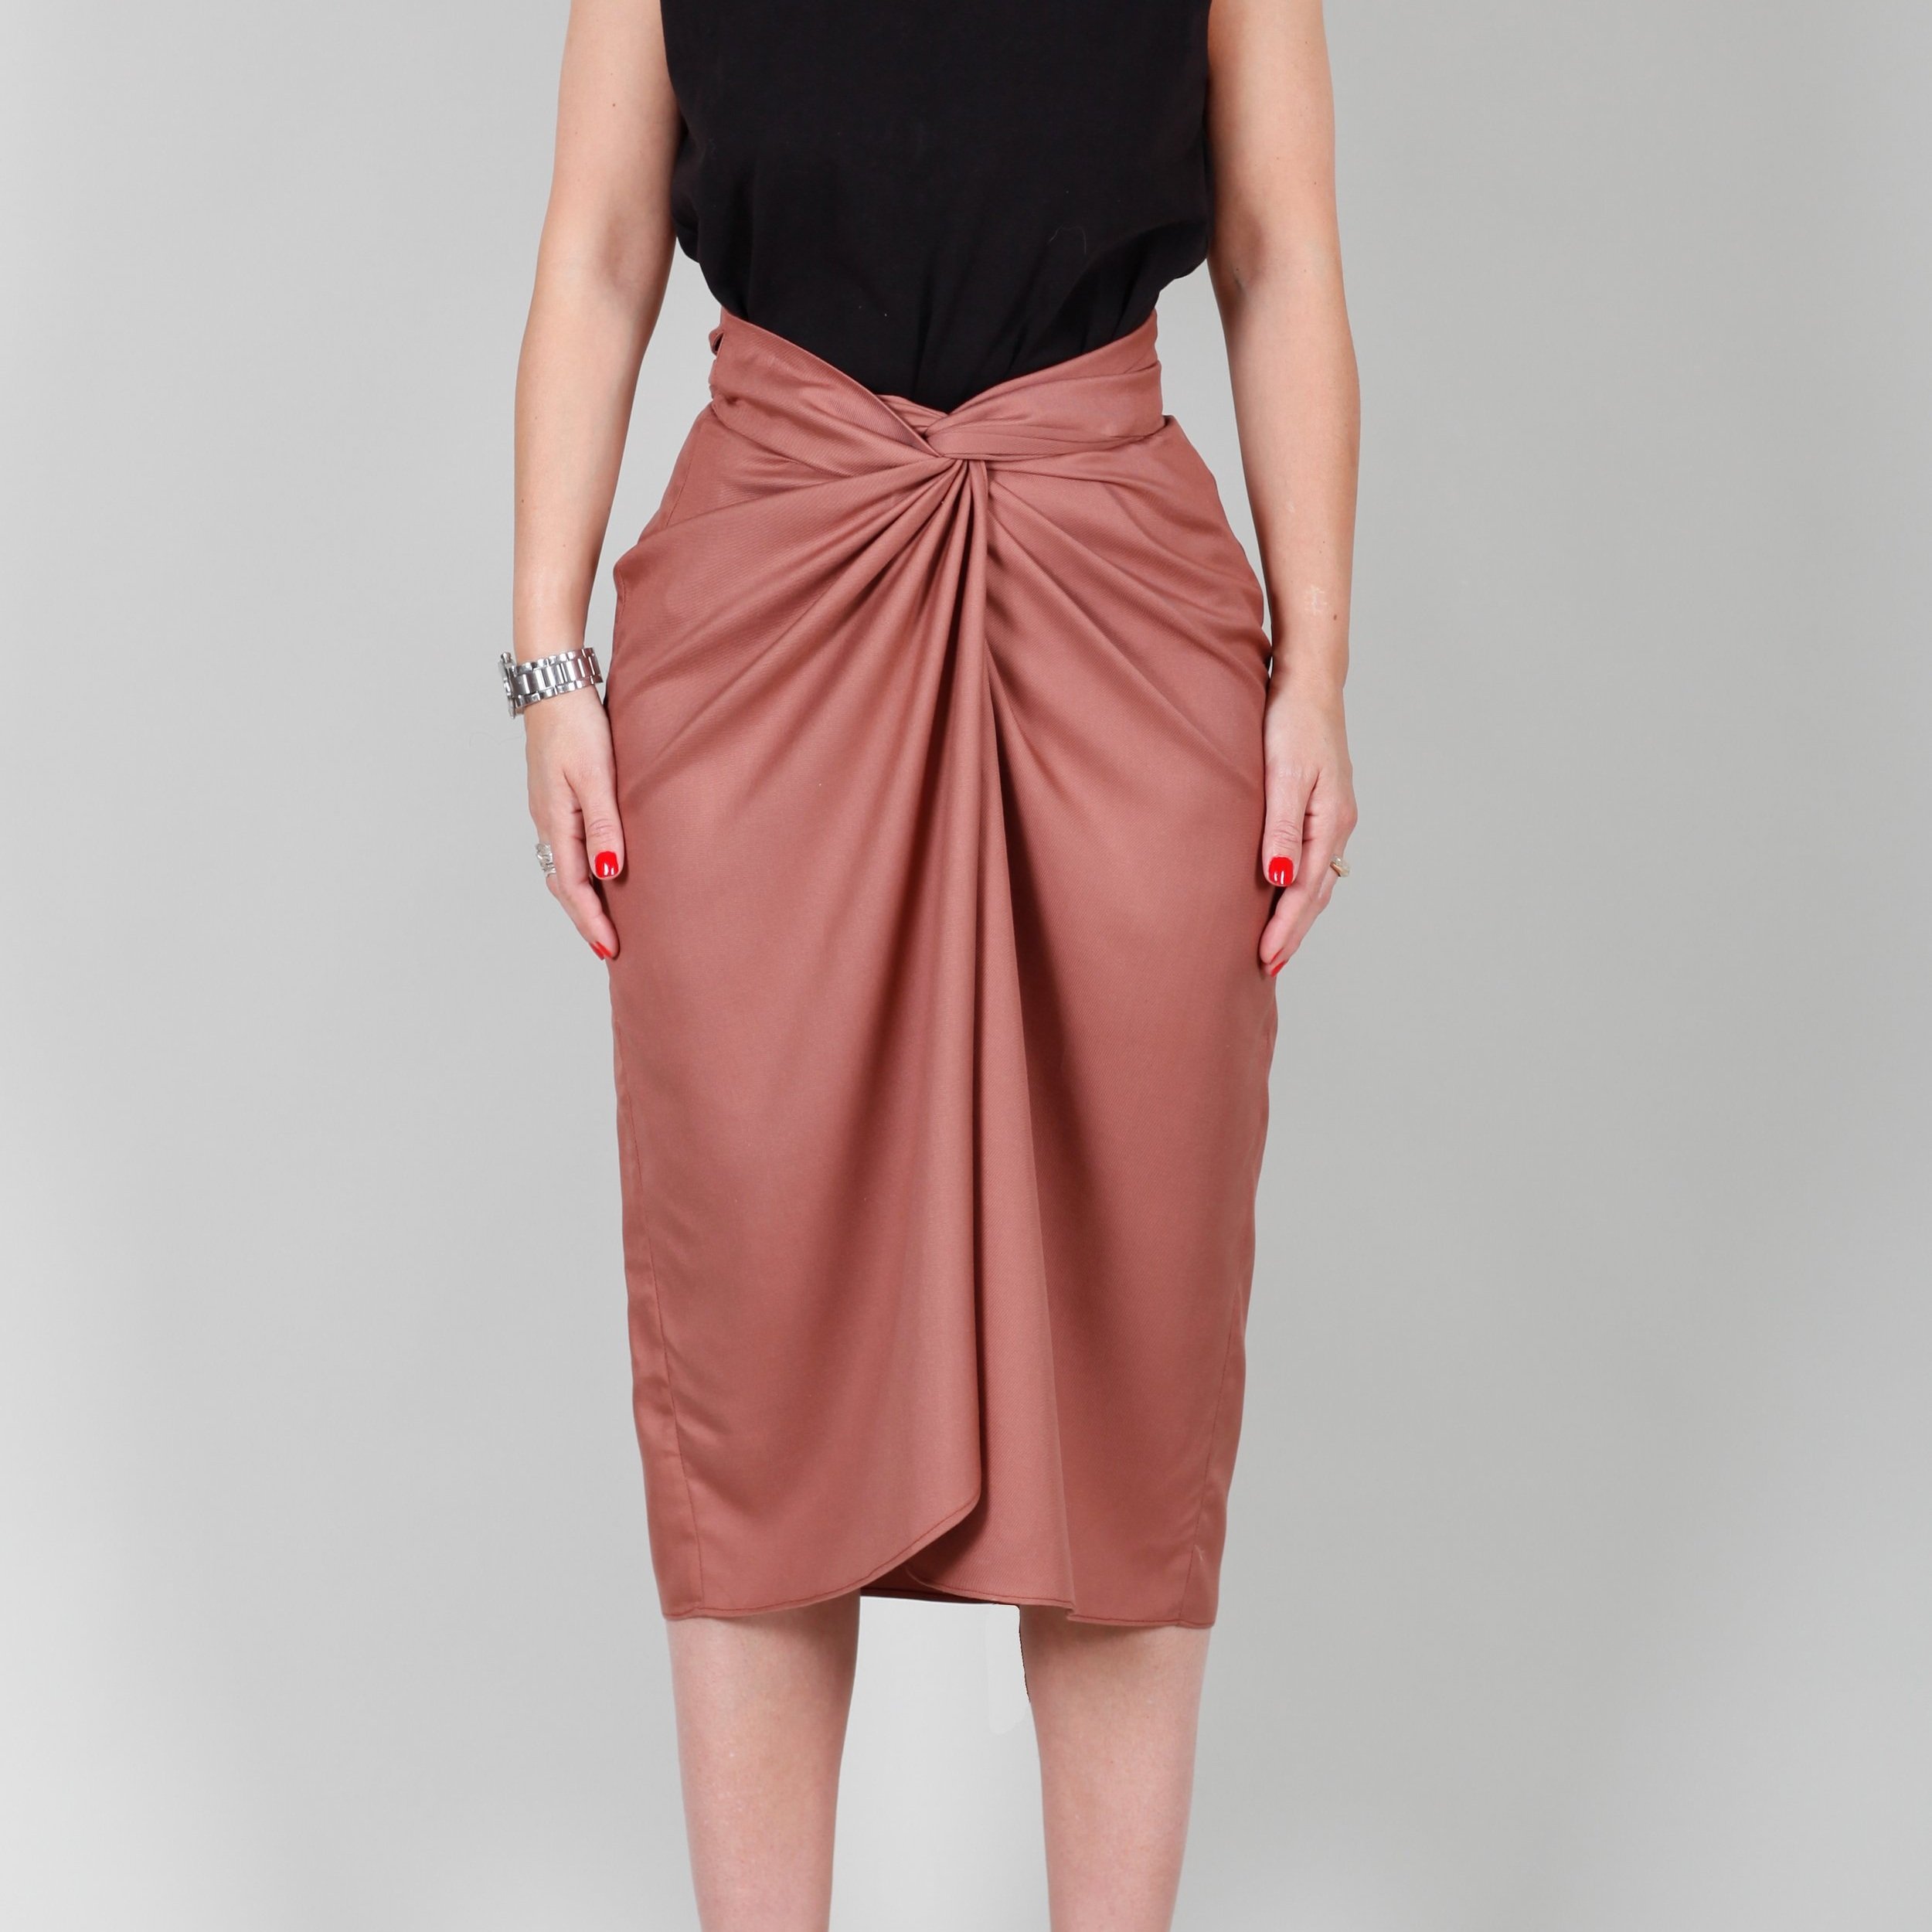 Box Pleat Skirt - FREE sewing pattern » BERNINA Blog